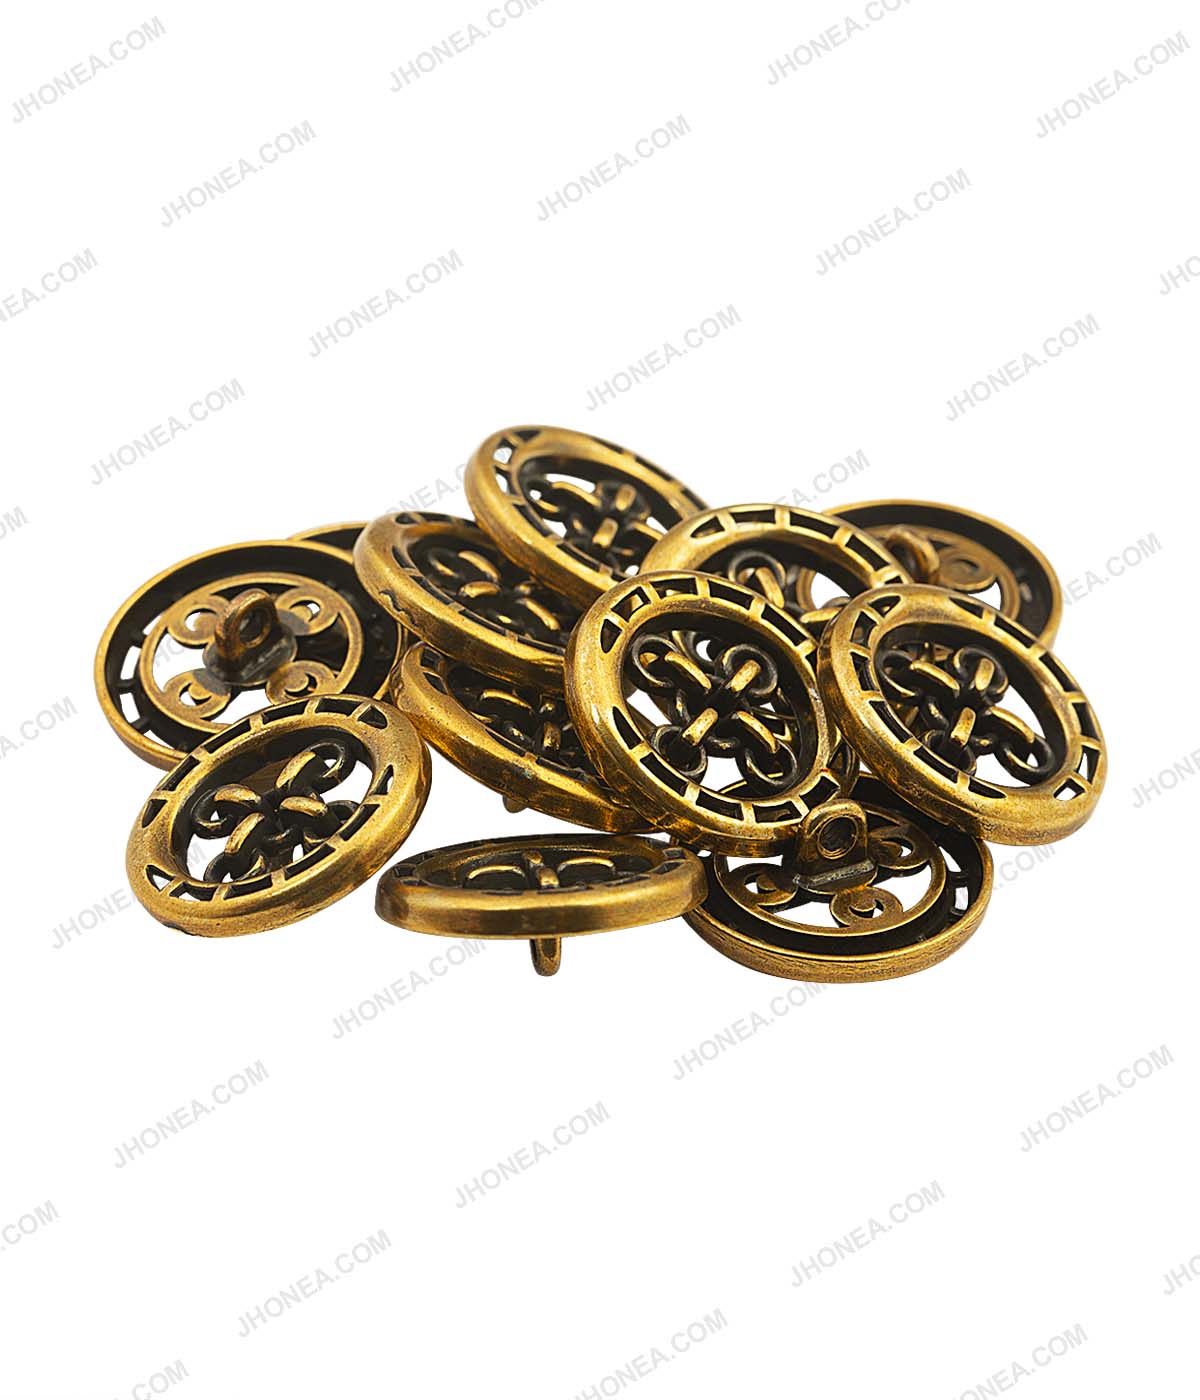 Buttonhole Design Antique Gold Coat Metal Buttons